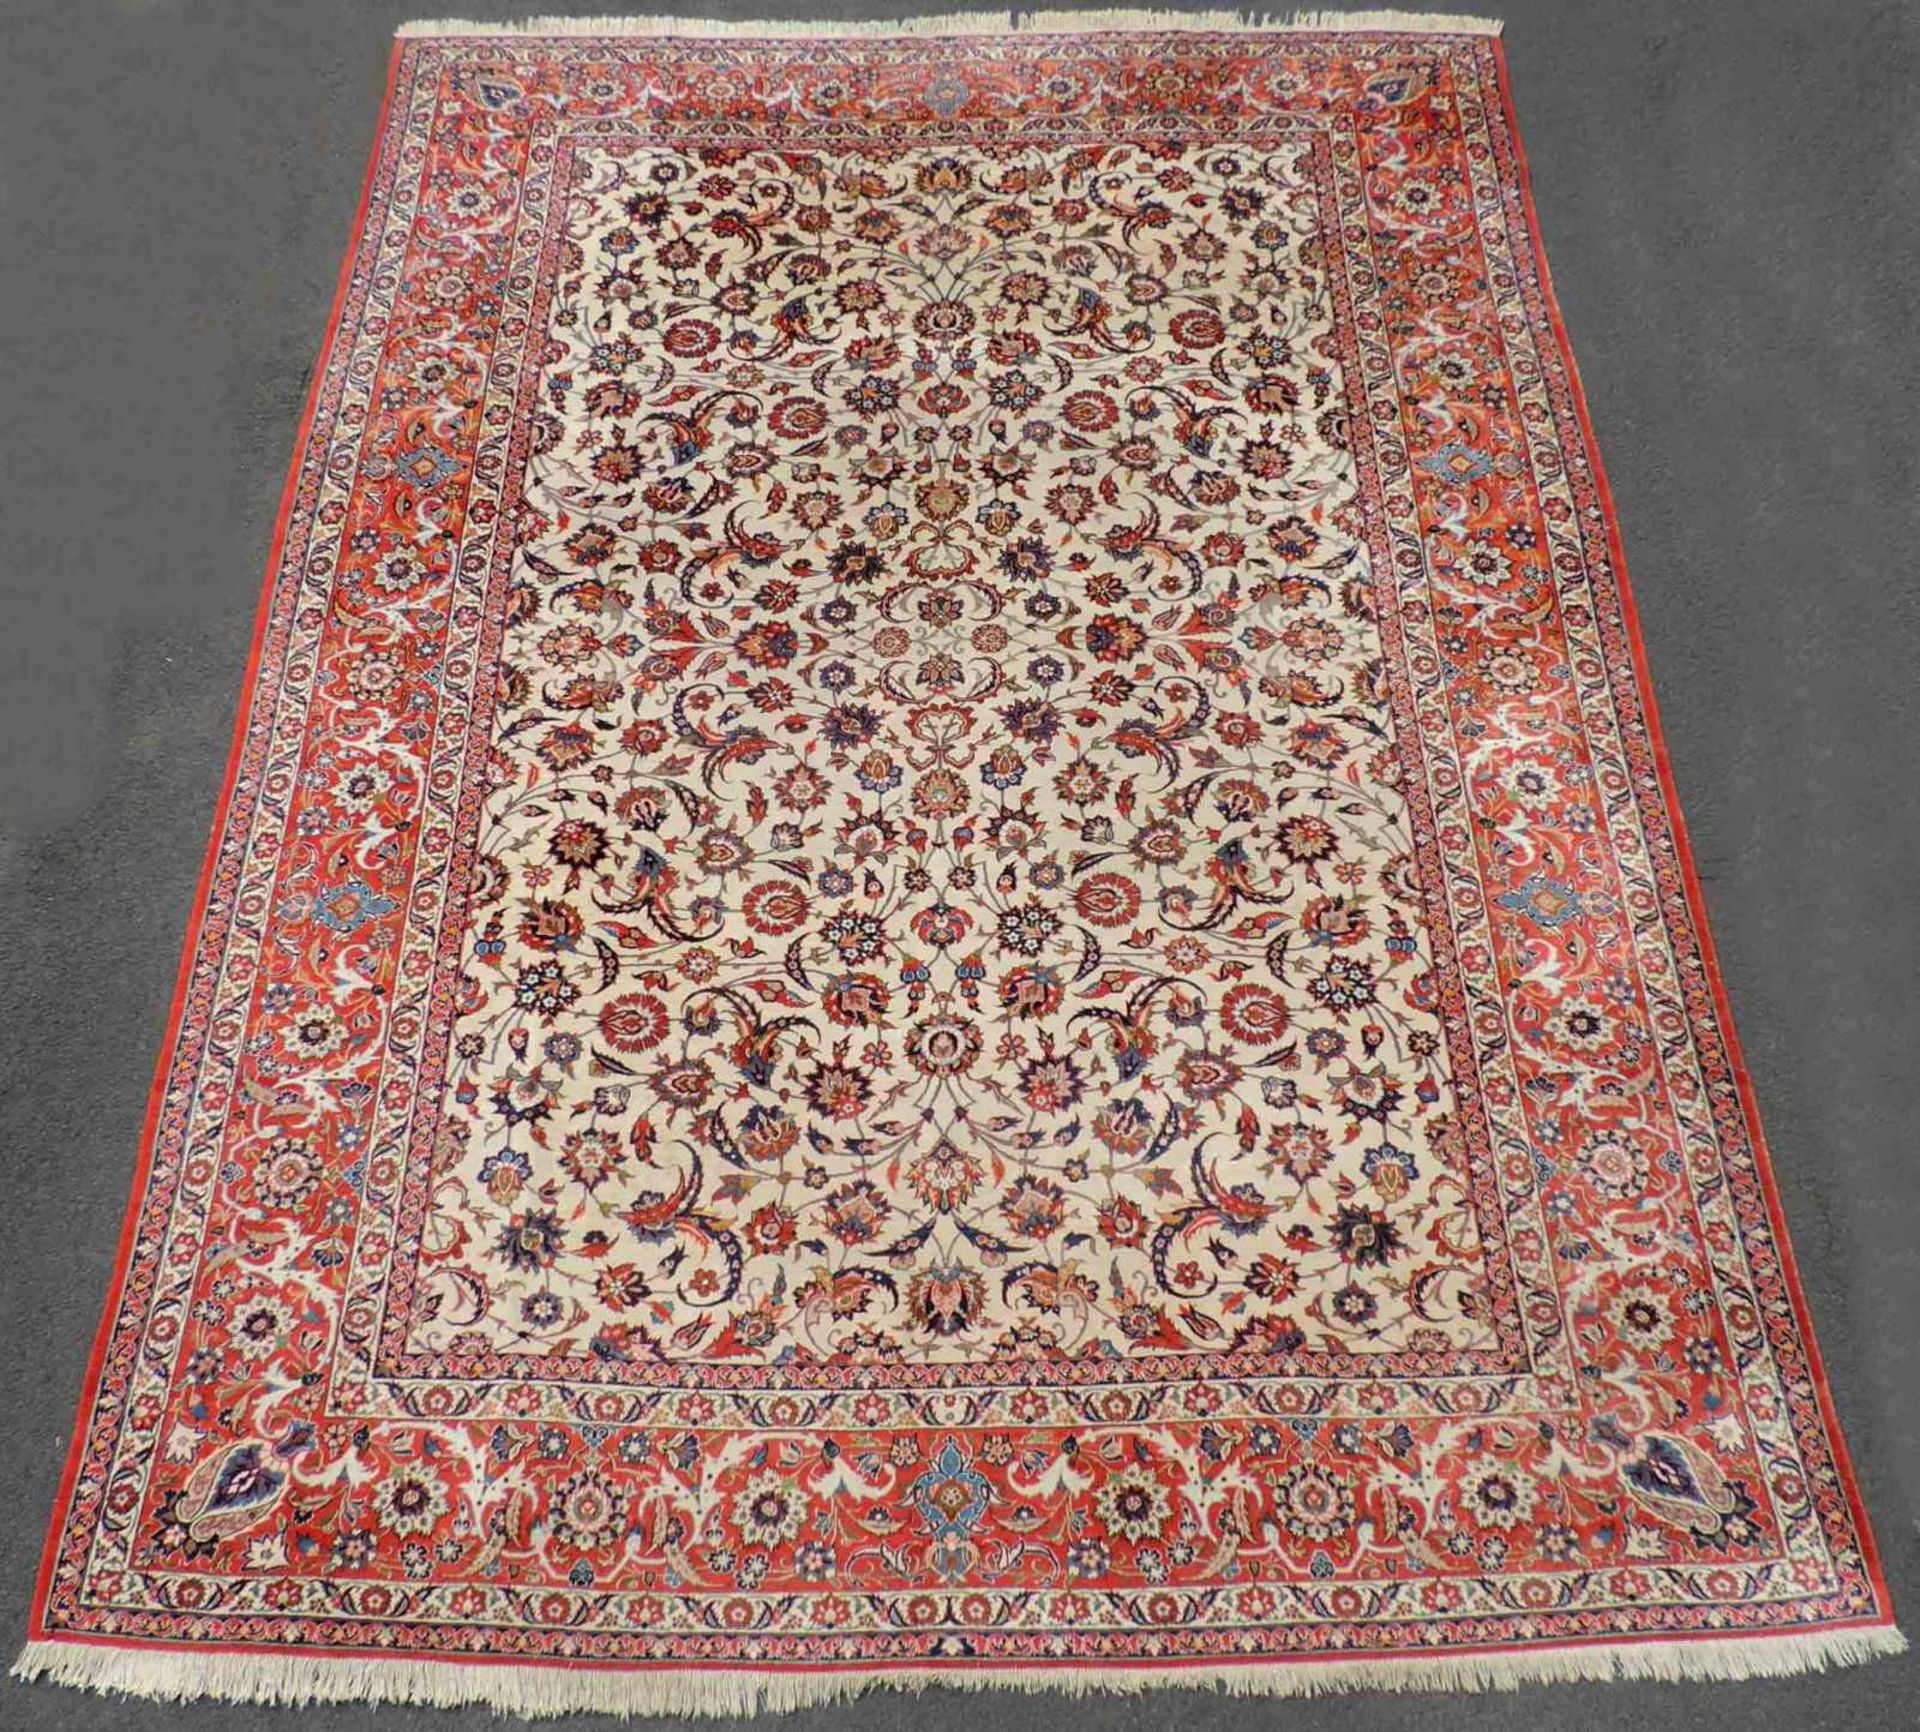 Isfahan "Nadjafabad" Teppich, feine Knüpfung. Iran. Ostpersien. 435 cm x 318 cm. Handgeknüpft. Wolle